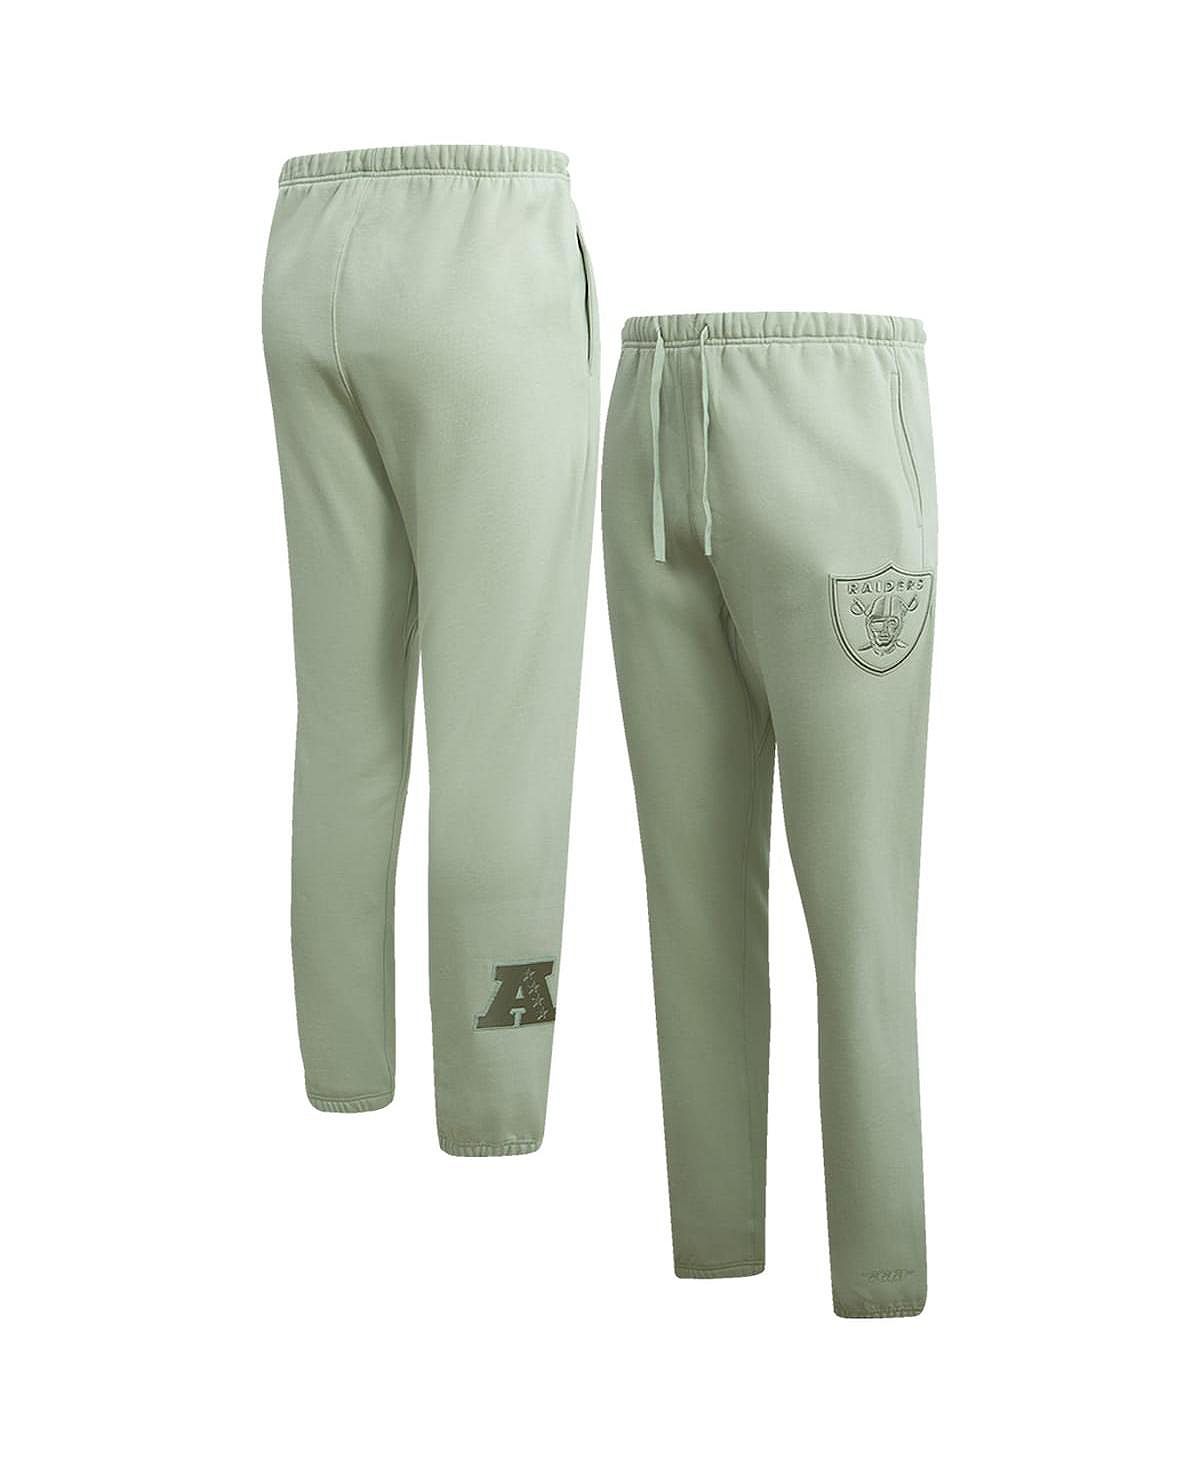 Мужские светло-зеленые флисовые спортивные штаны нейтрального цвета Las Vegas Raiders Pro Standard cool spots las vegas